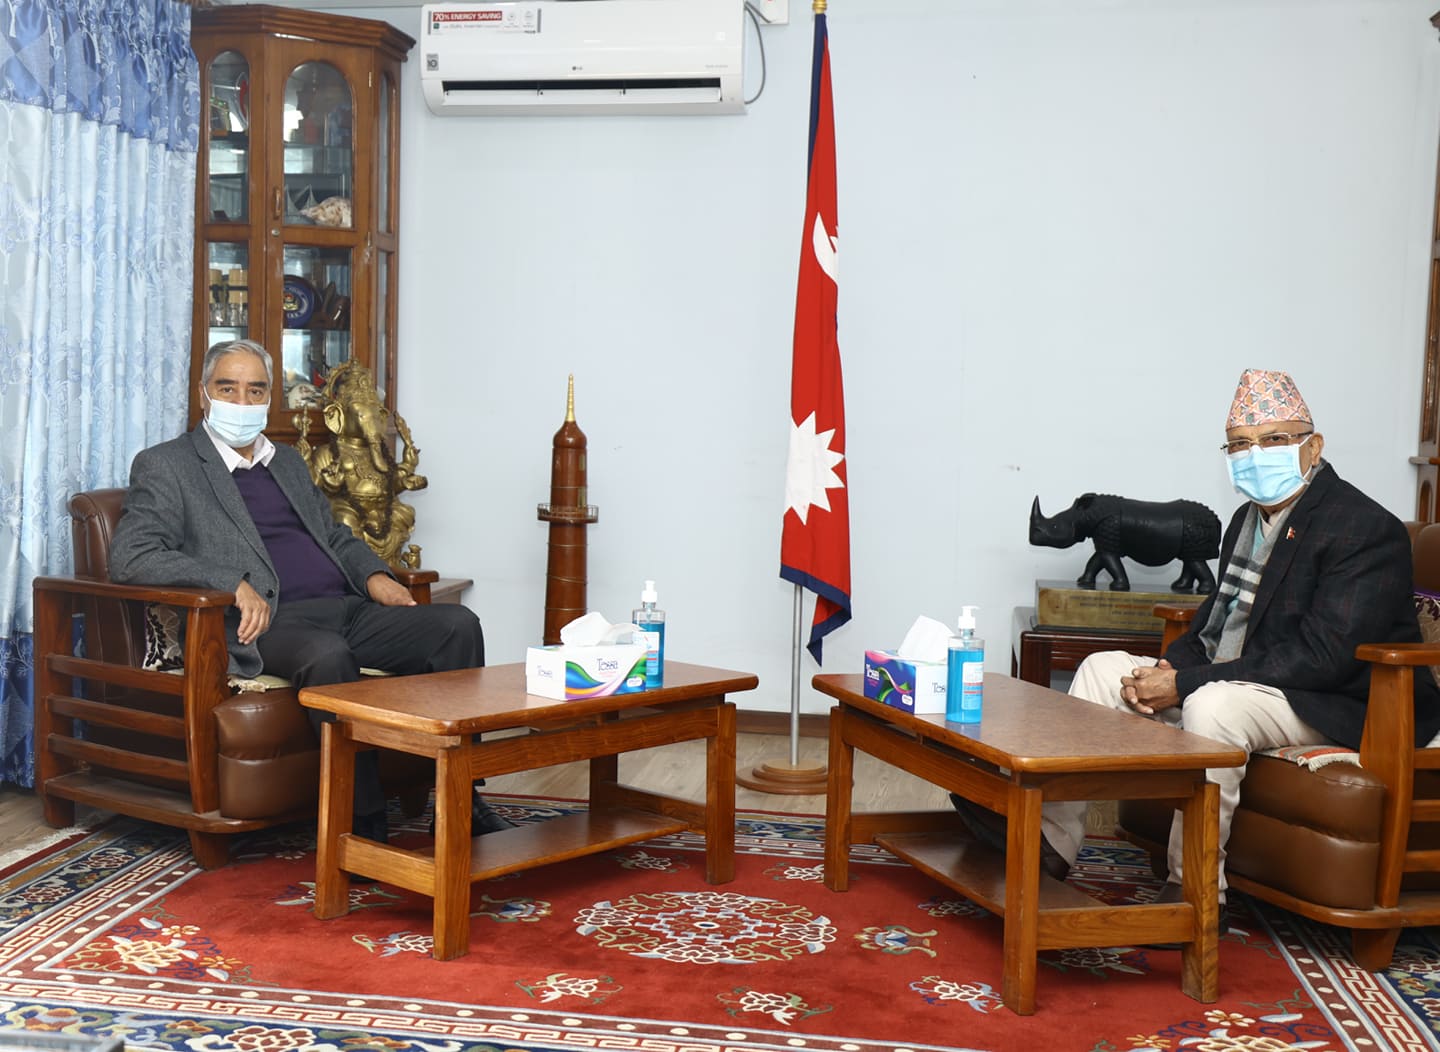 PM Deuba visits UML Chair Oli